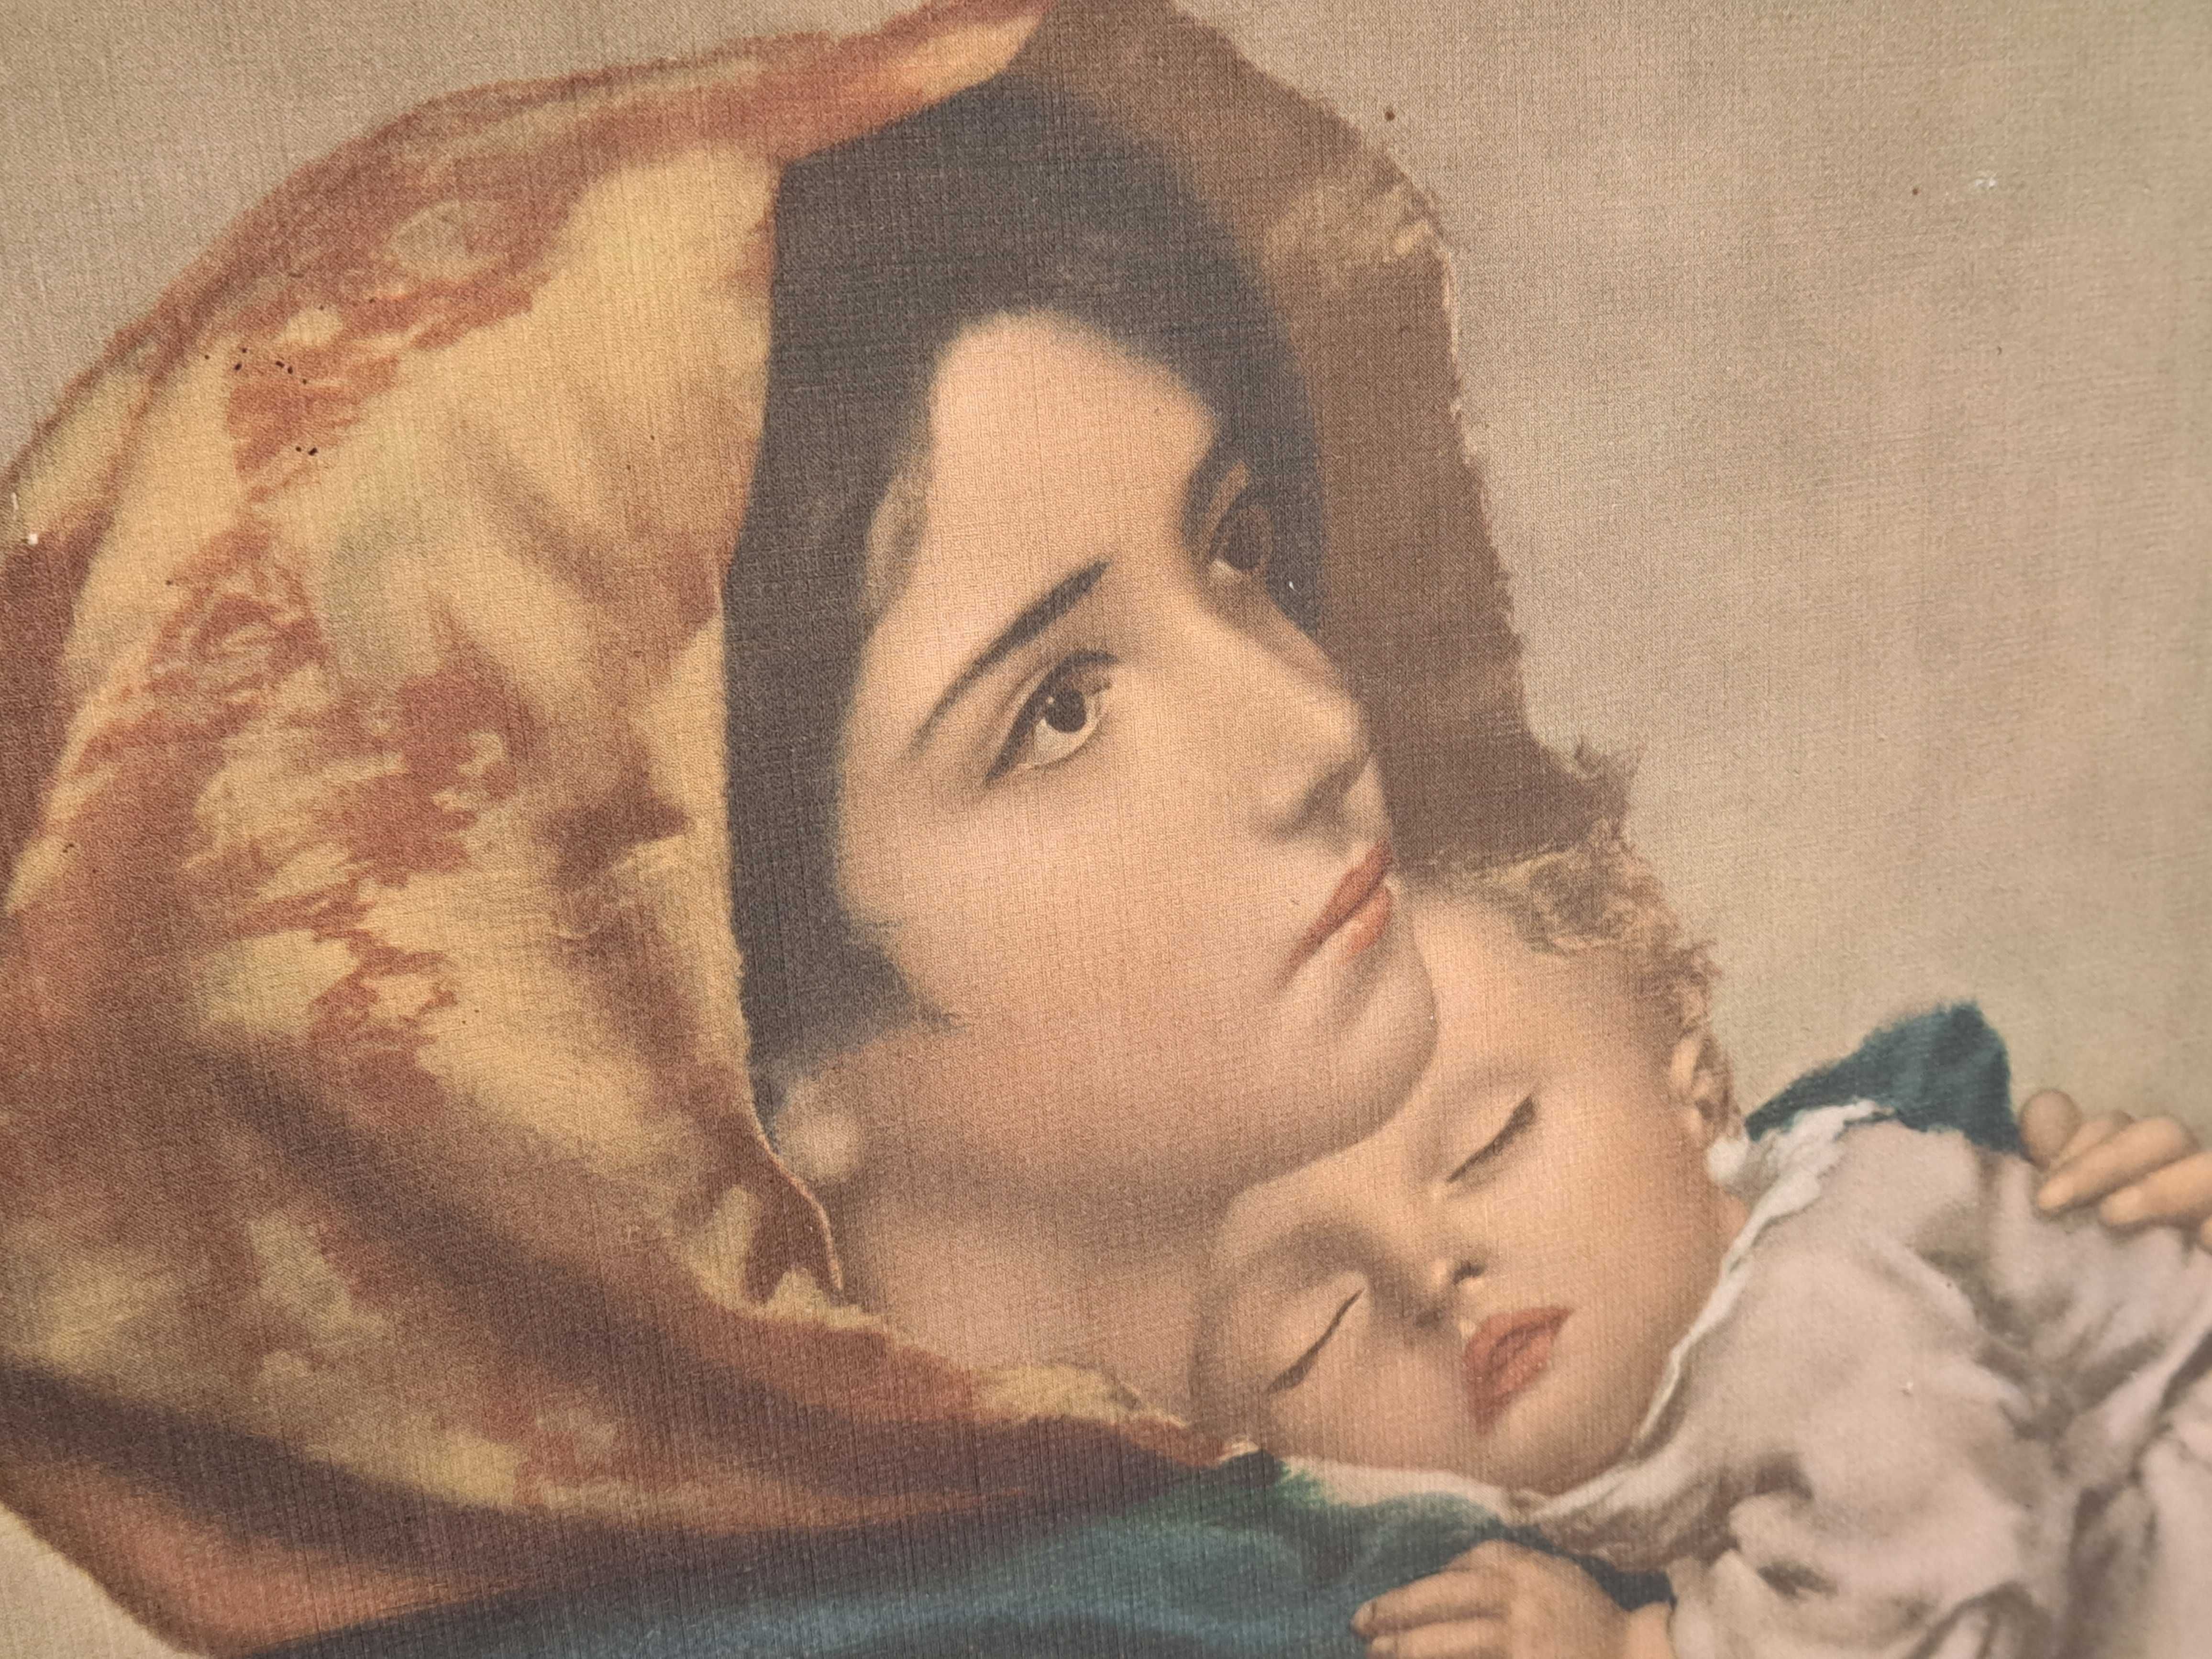 Obraz Matka boska cygańska druk rama złota biała reprodukcja Ferruzzi